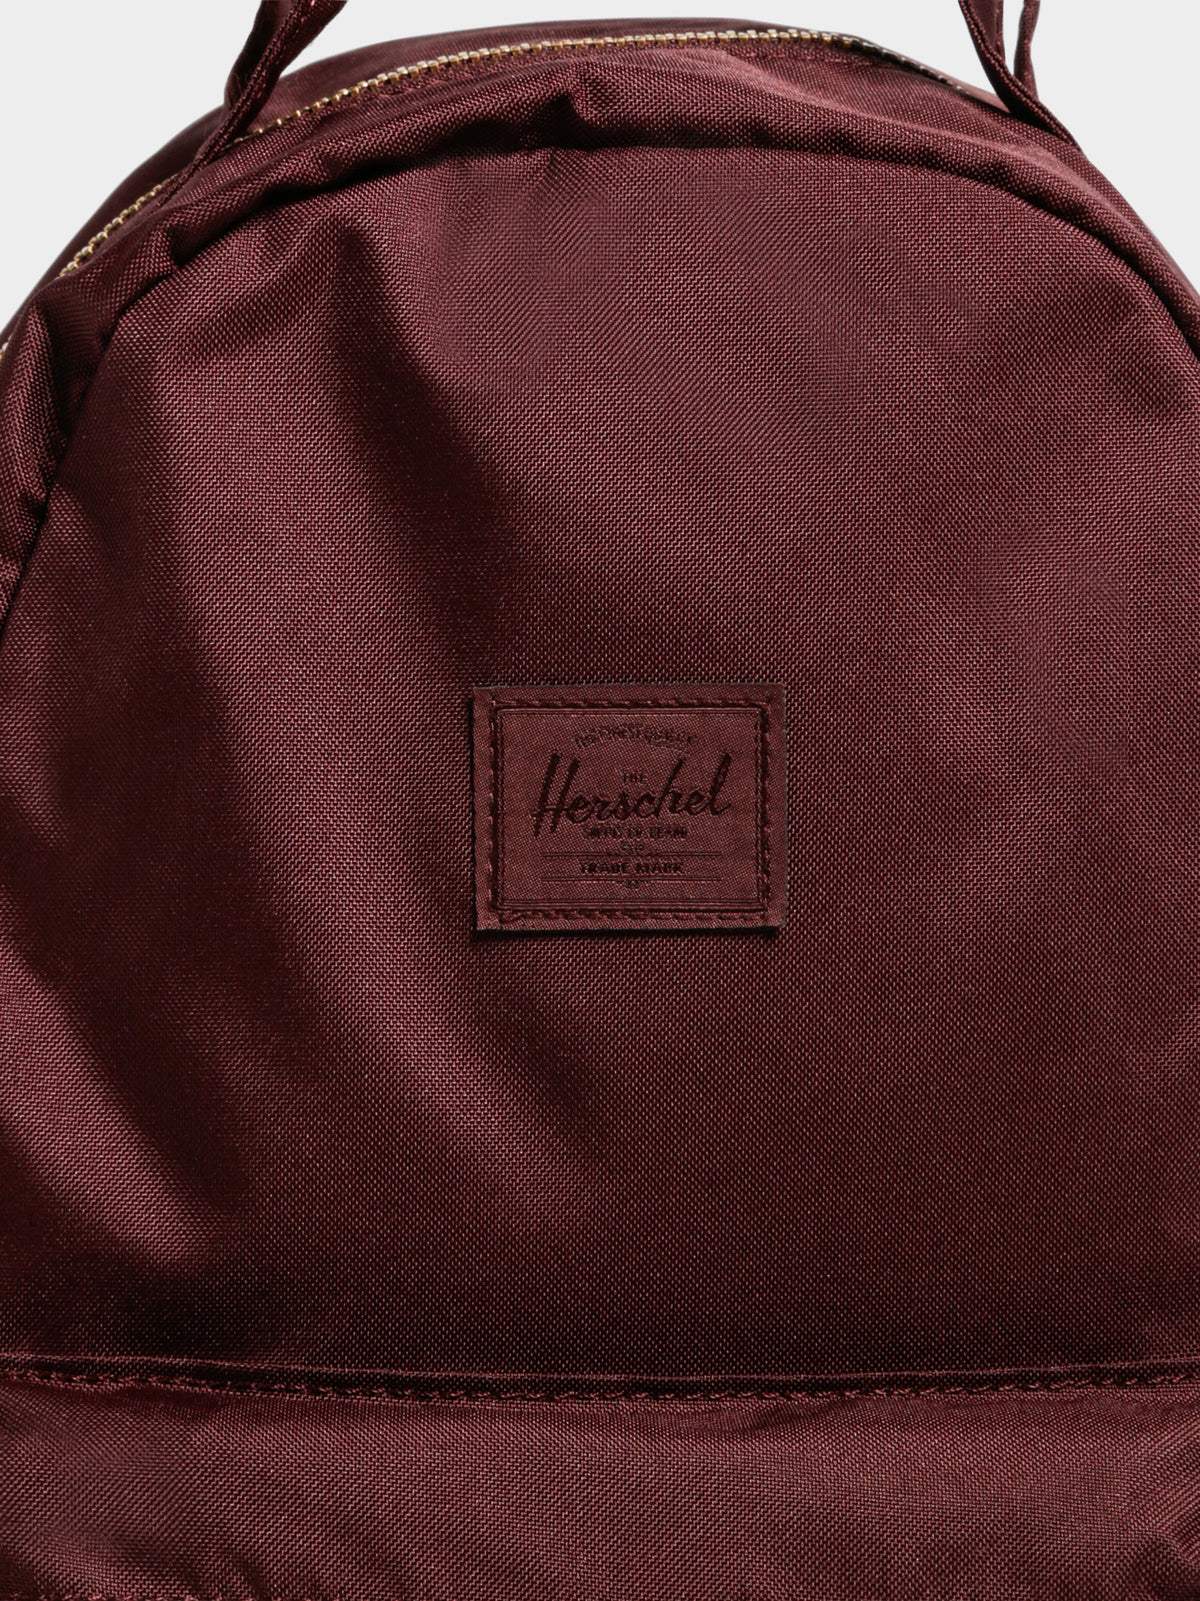 Nova Small Backpack in Plum Purple